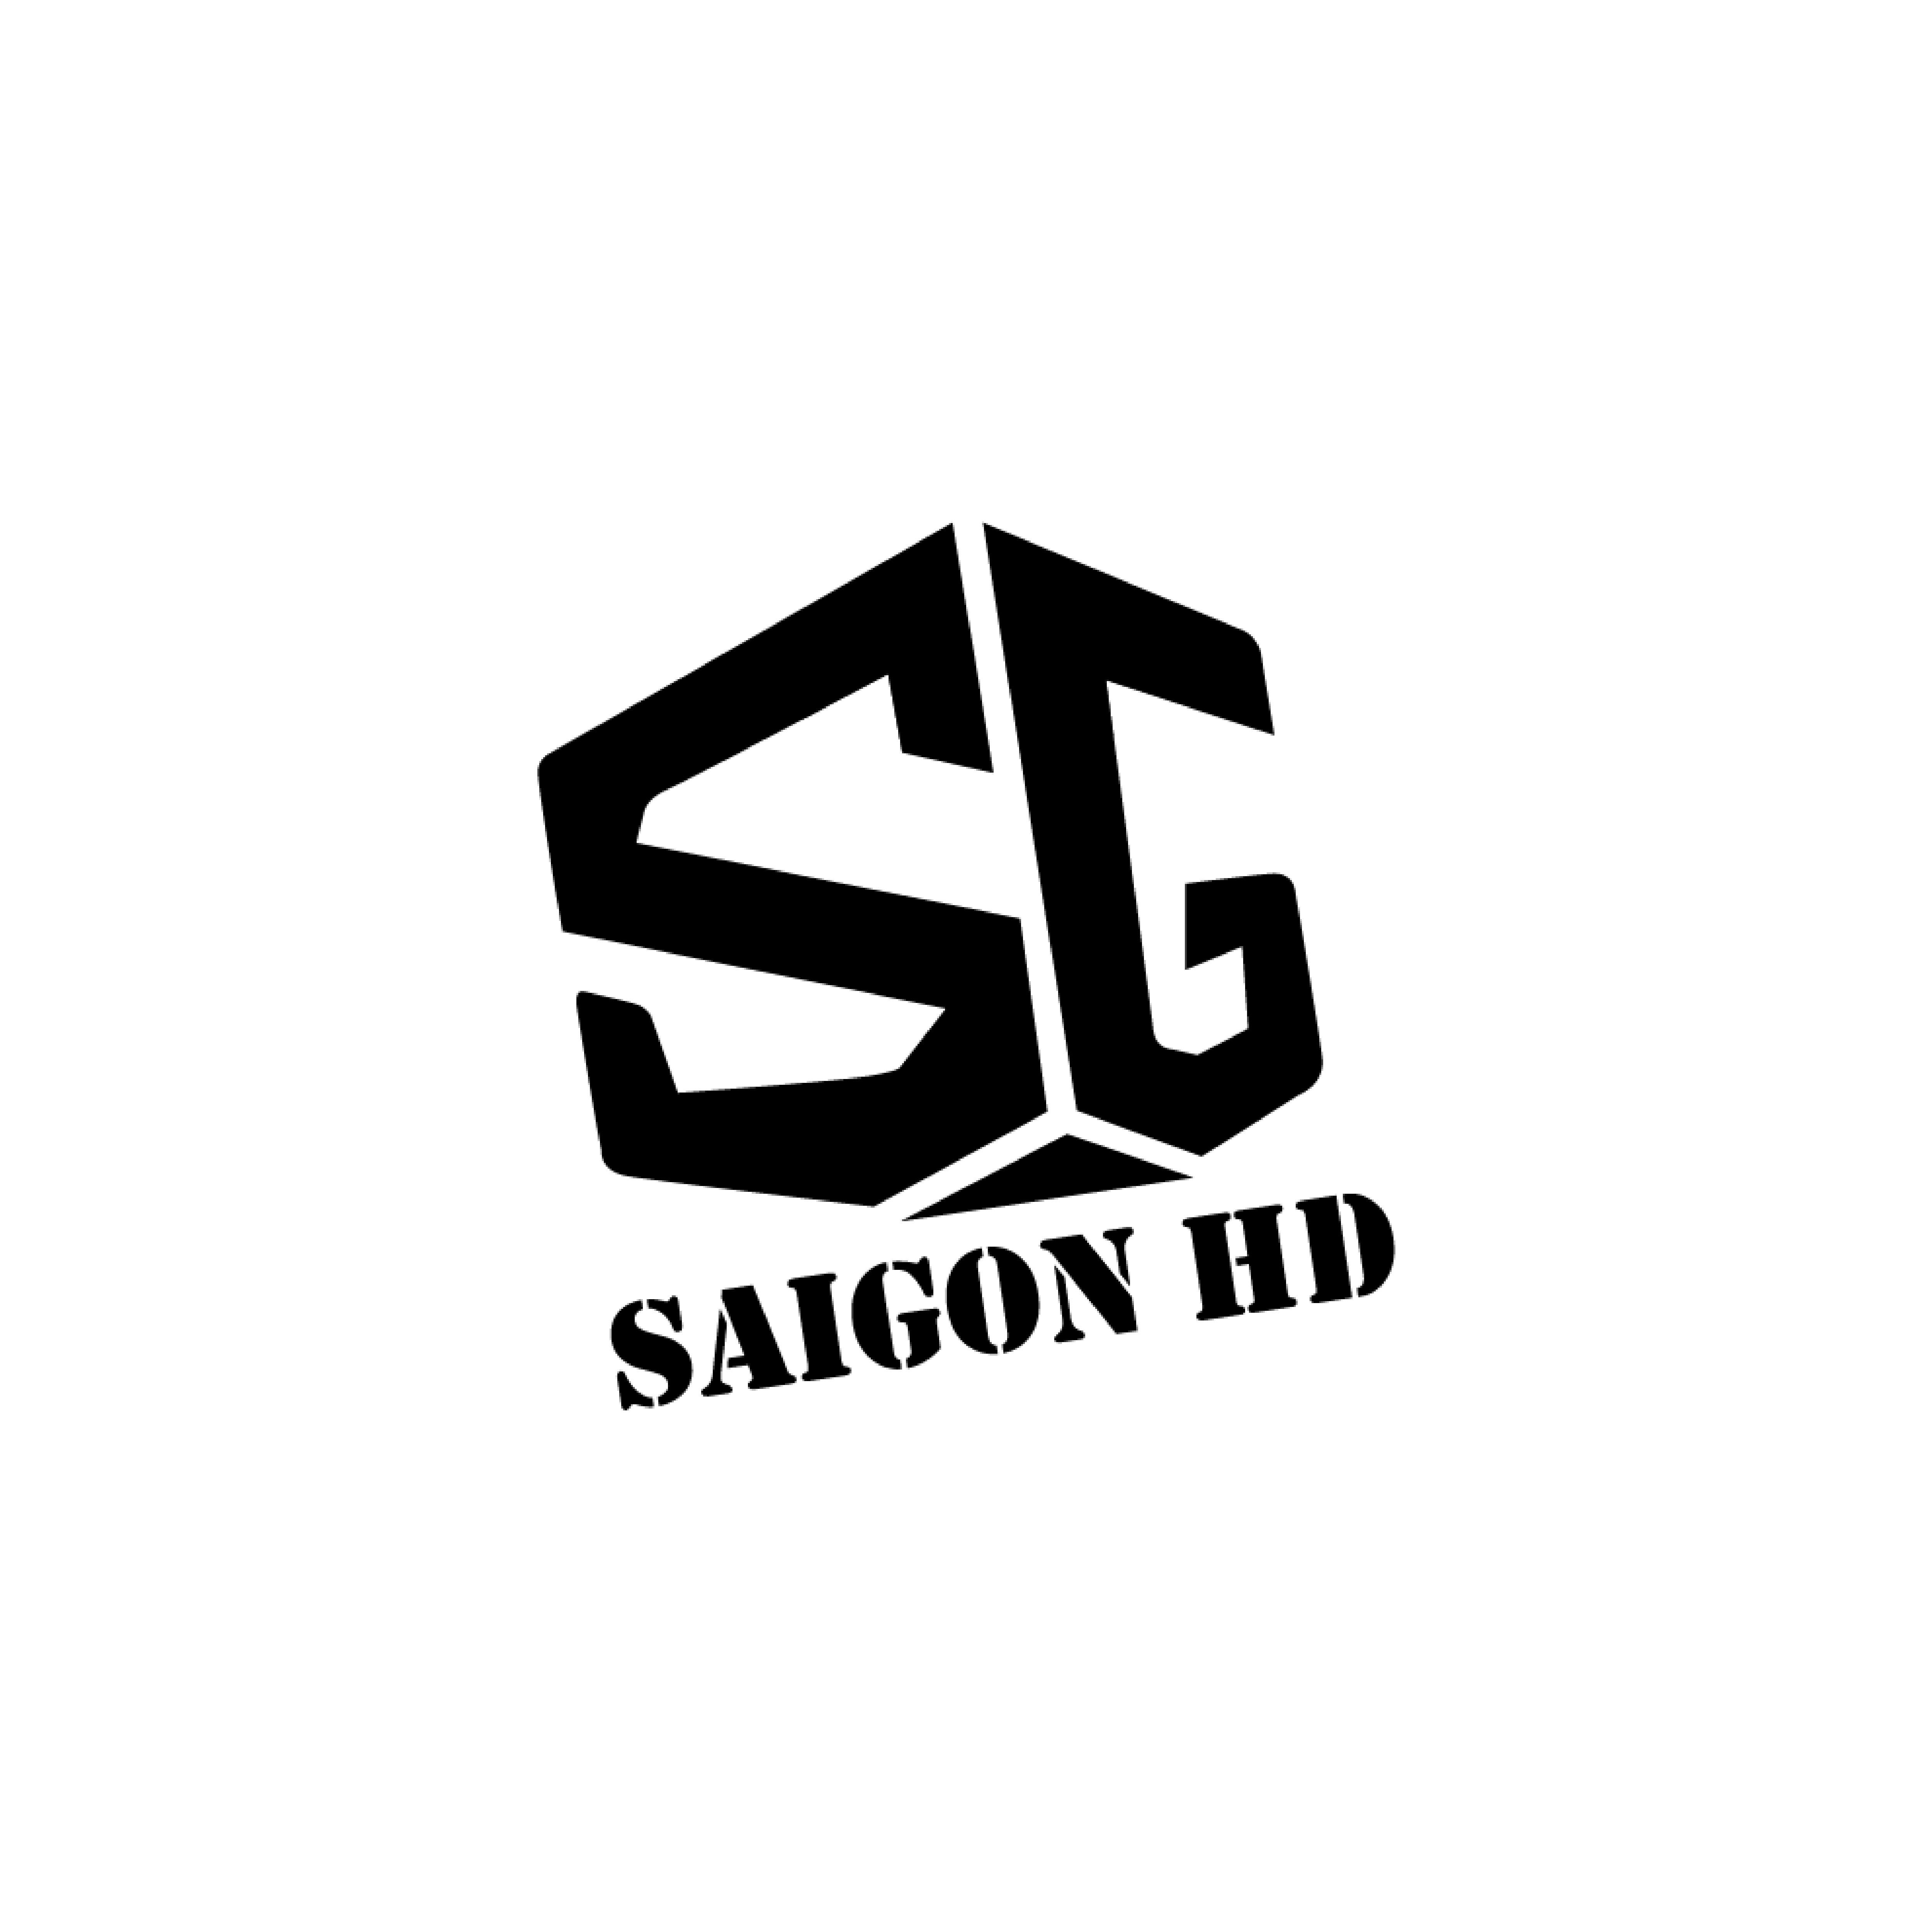 SAIGON HD